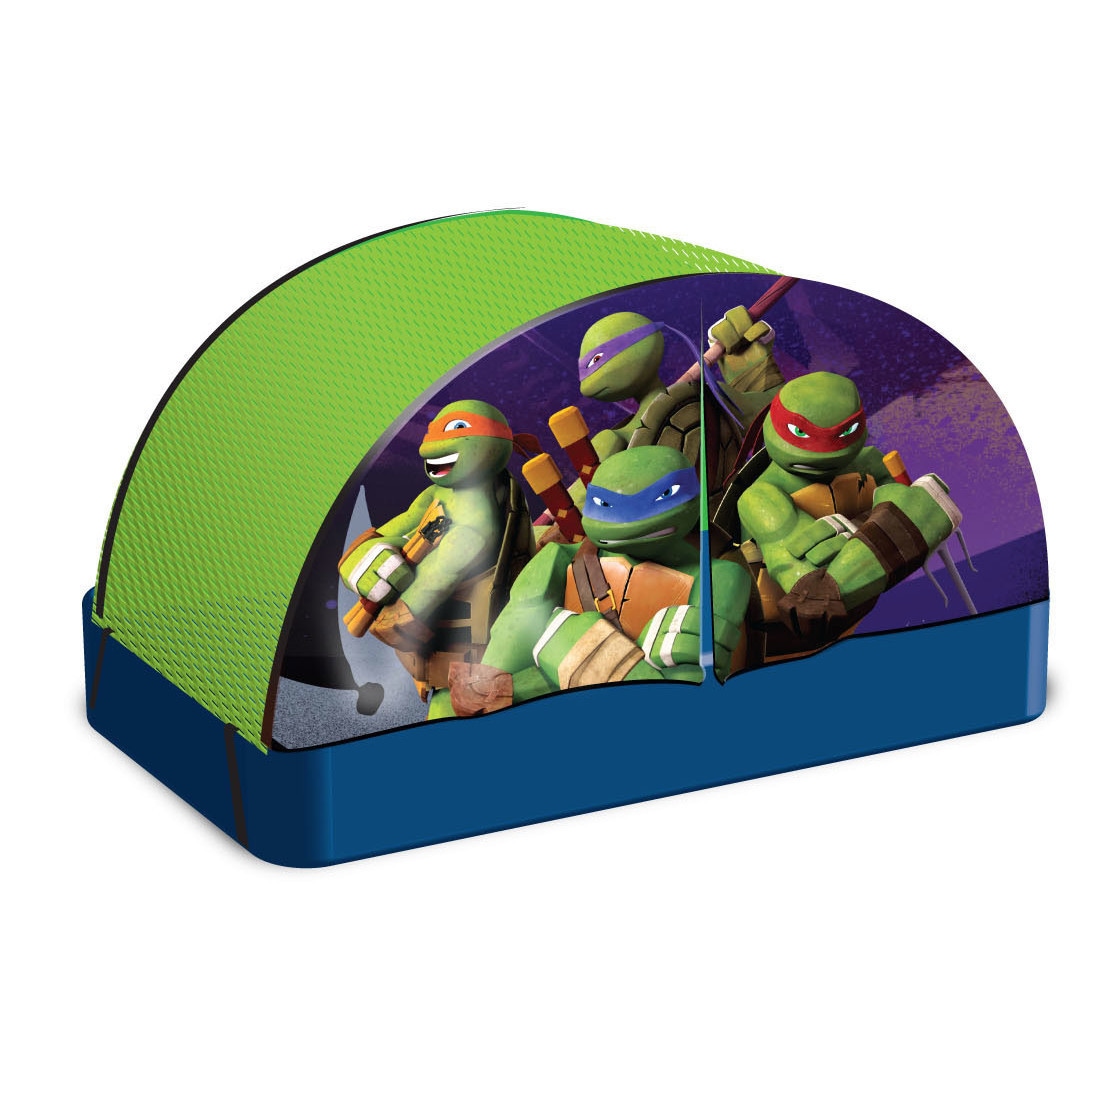 Compassion NWA - Ninja Turtle Tent $40.00